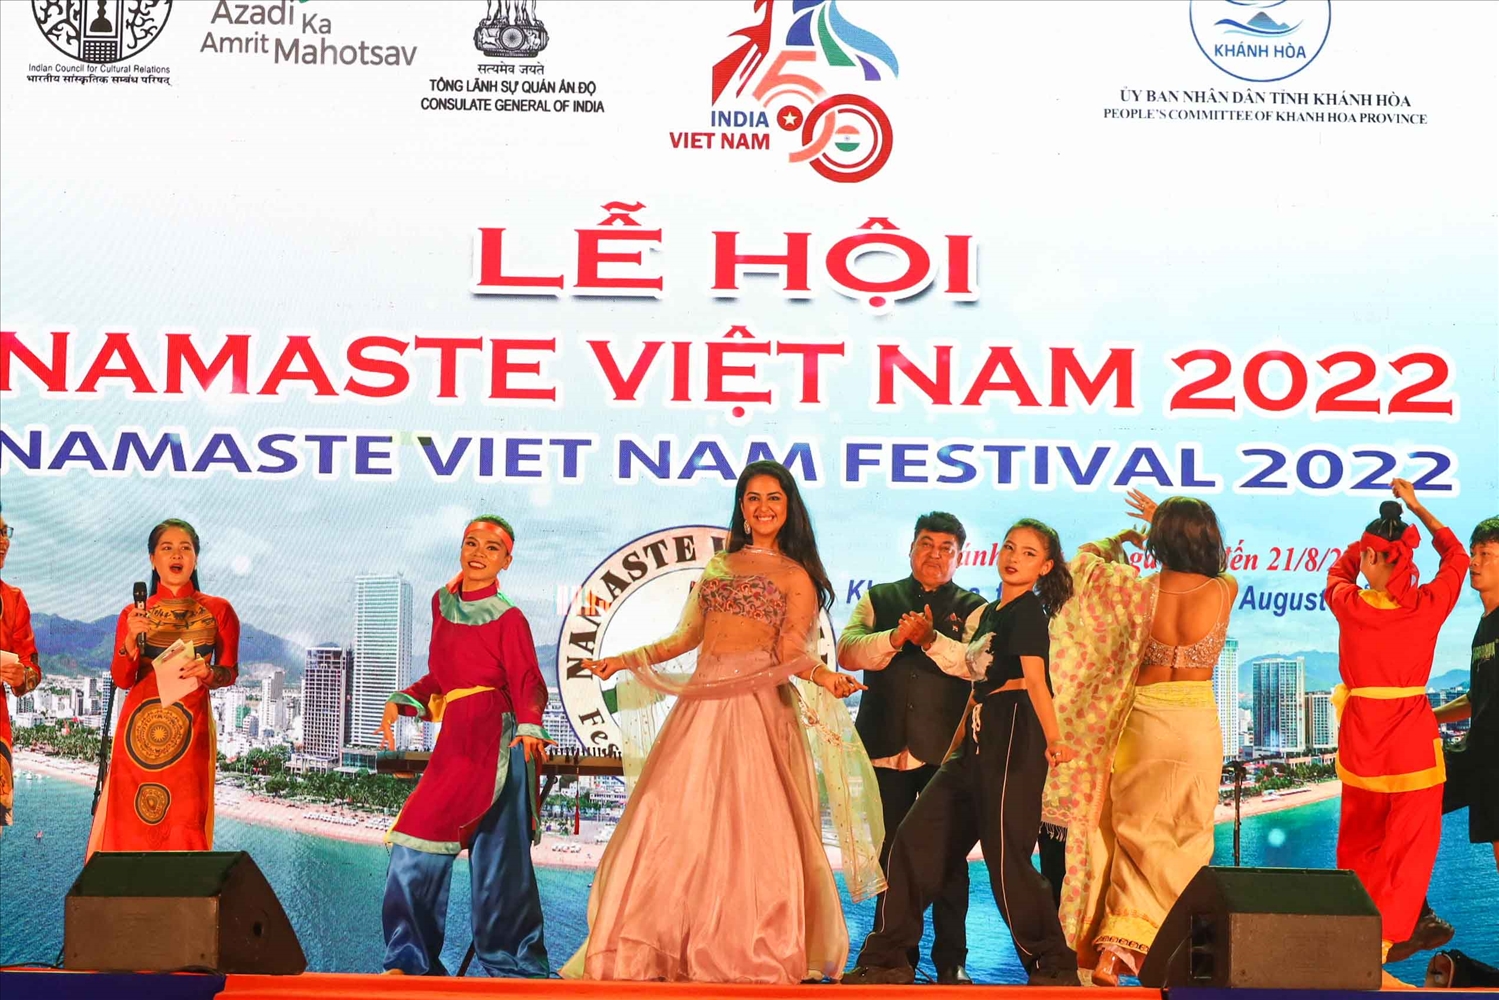 Chương trình biểu diễn nghệ thuật truyền thống và hiện đại của Ấn Độ và Việt Nam